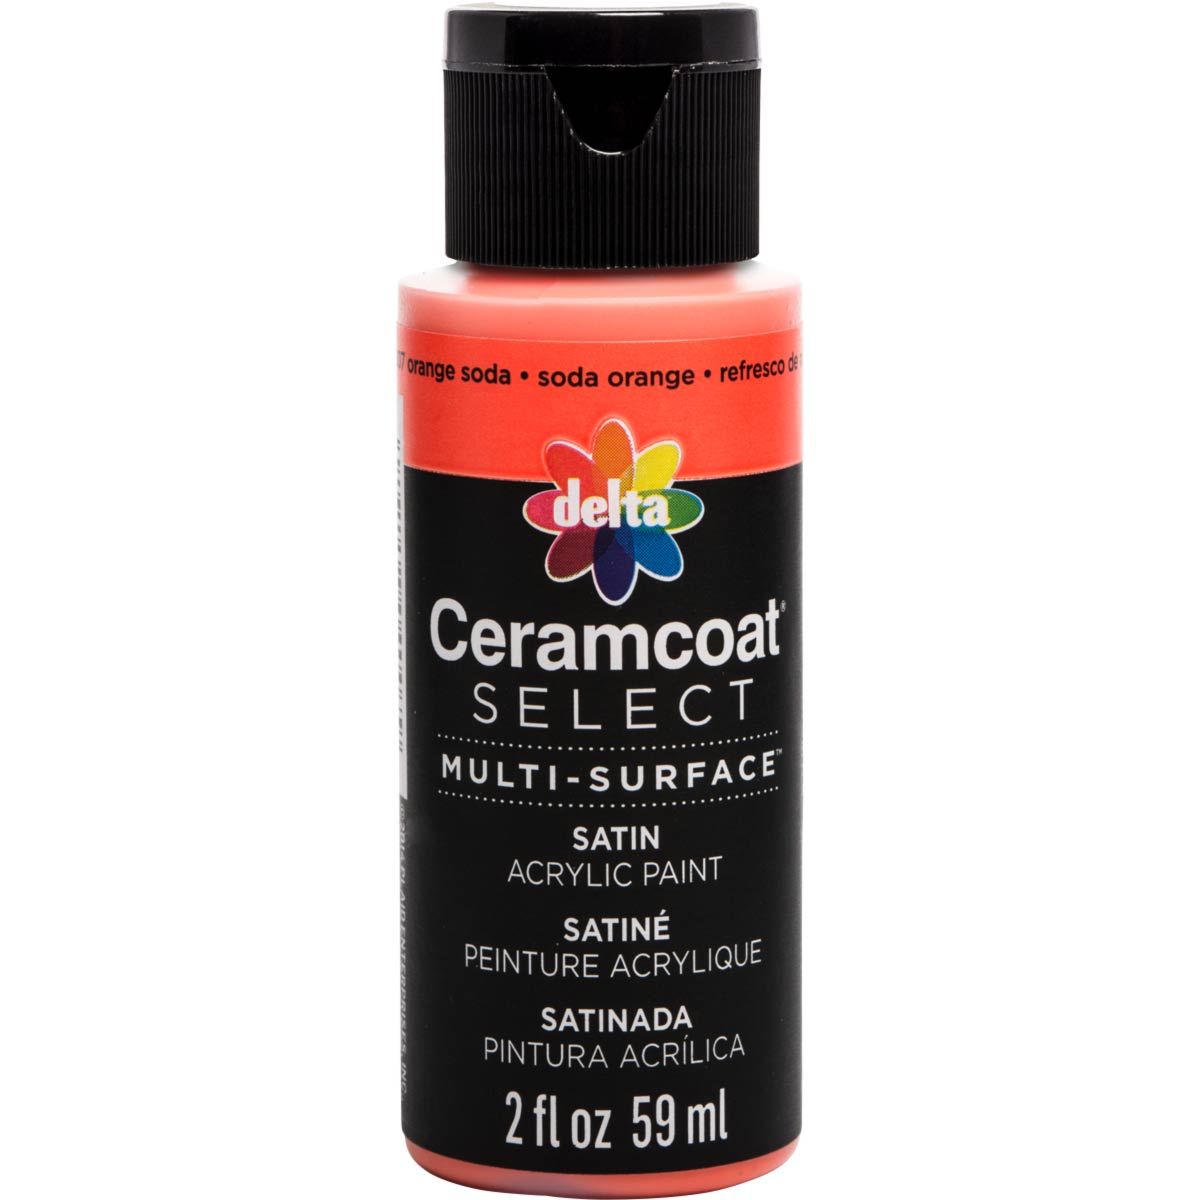 Delta Ceramcoat ® Select Multi-Surface Acrylic Paint - Satin - Orange Soda, 2 oz. - 04007